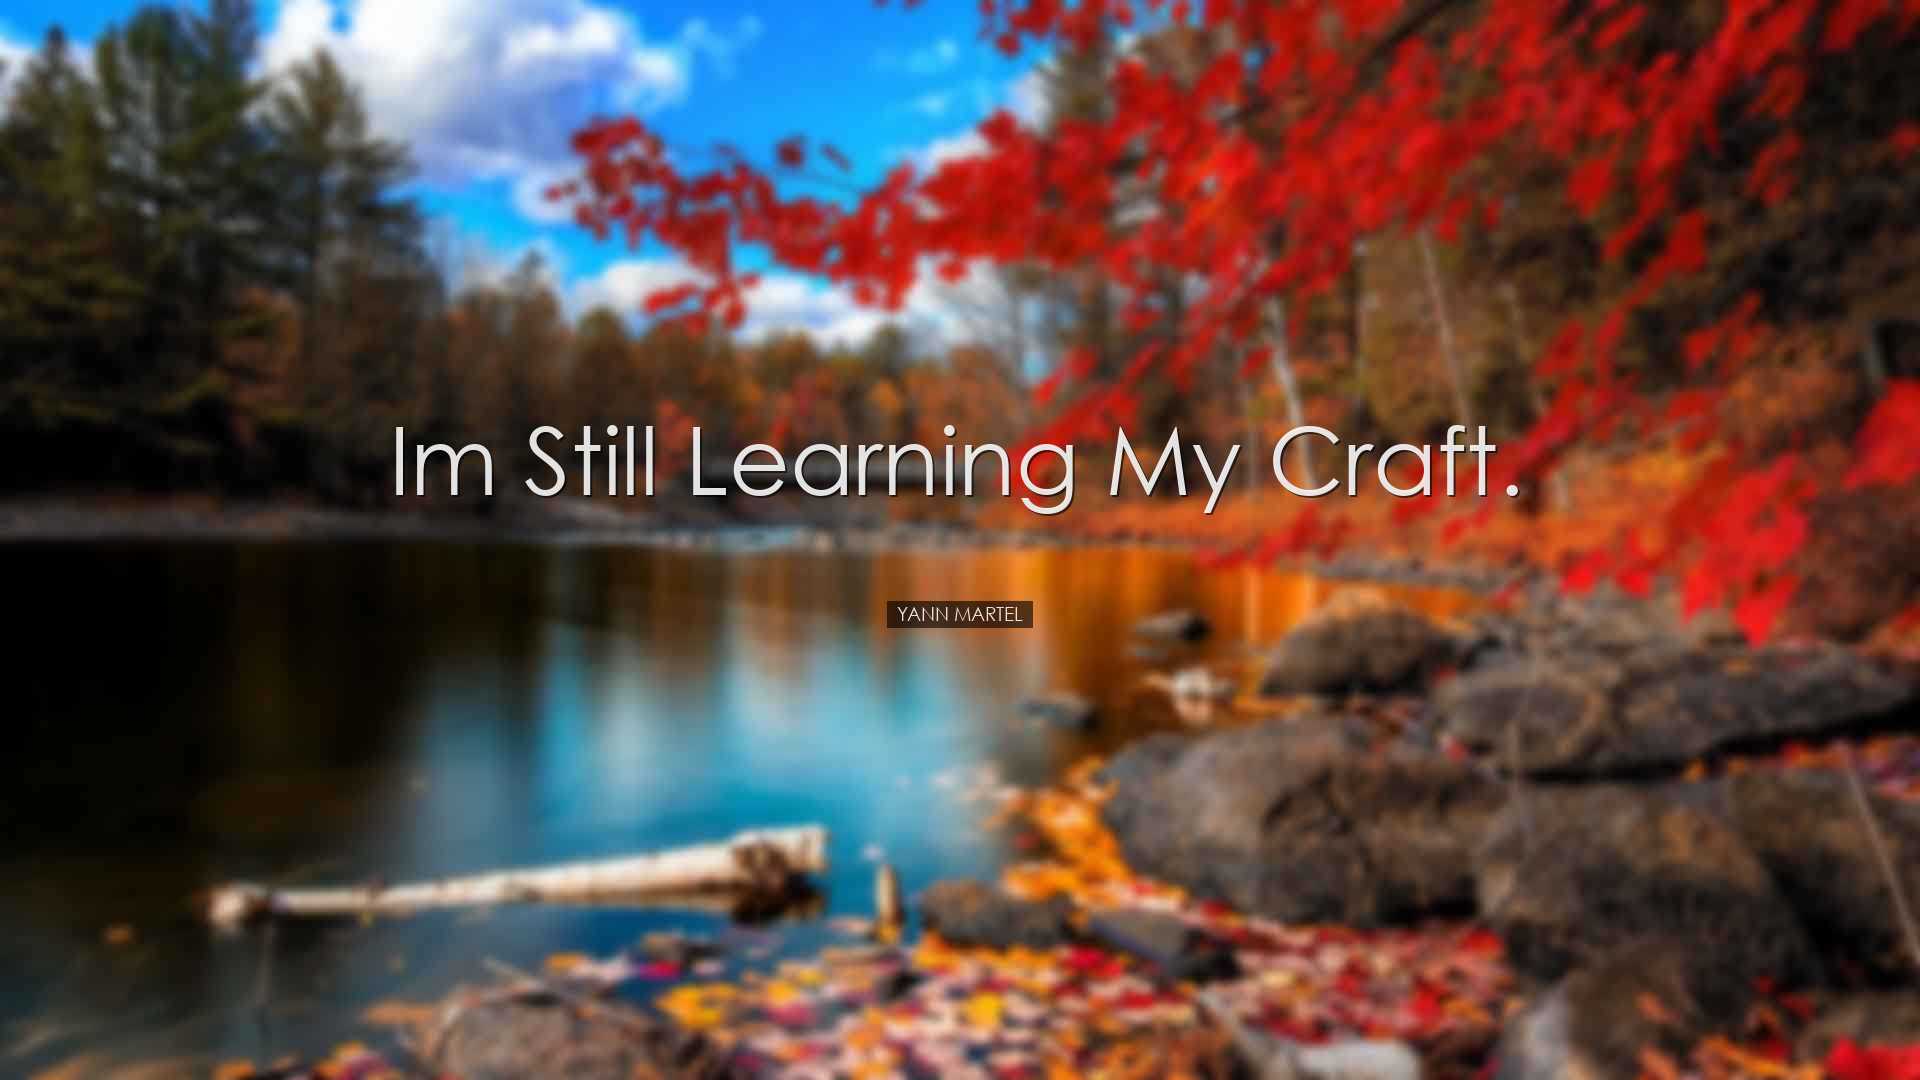 Im still learning my craft. - Yann Martel